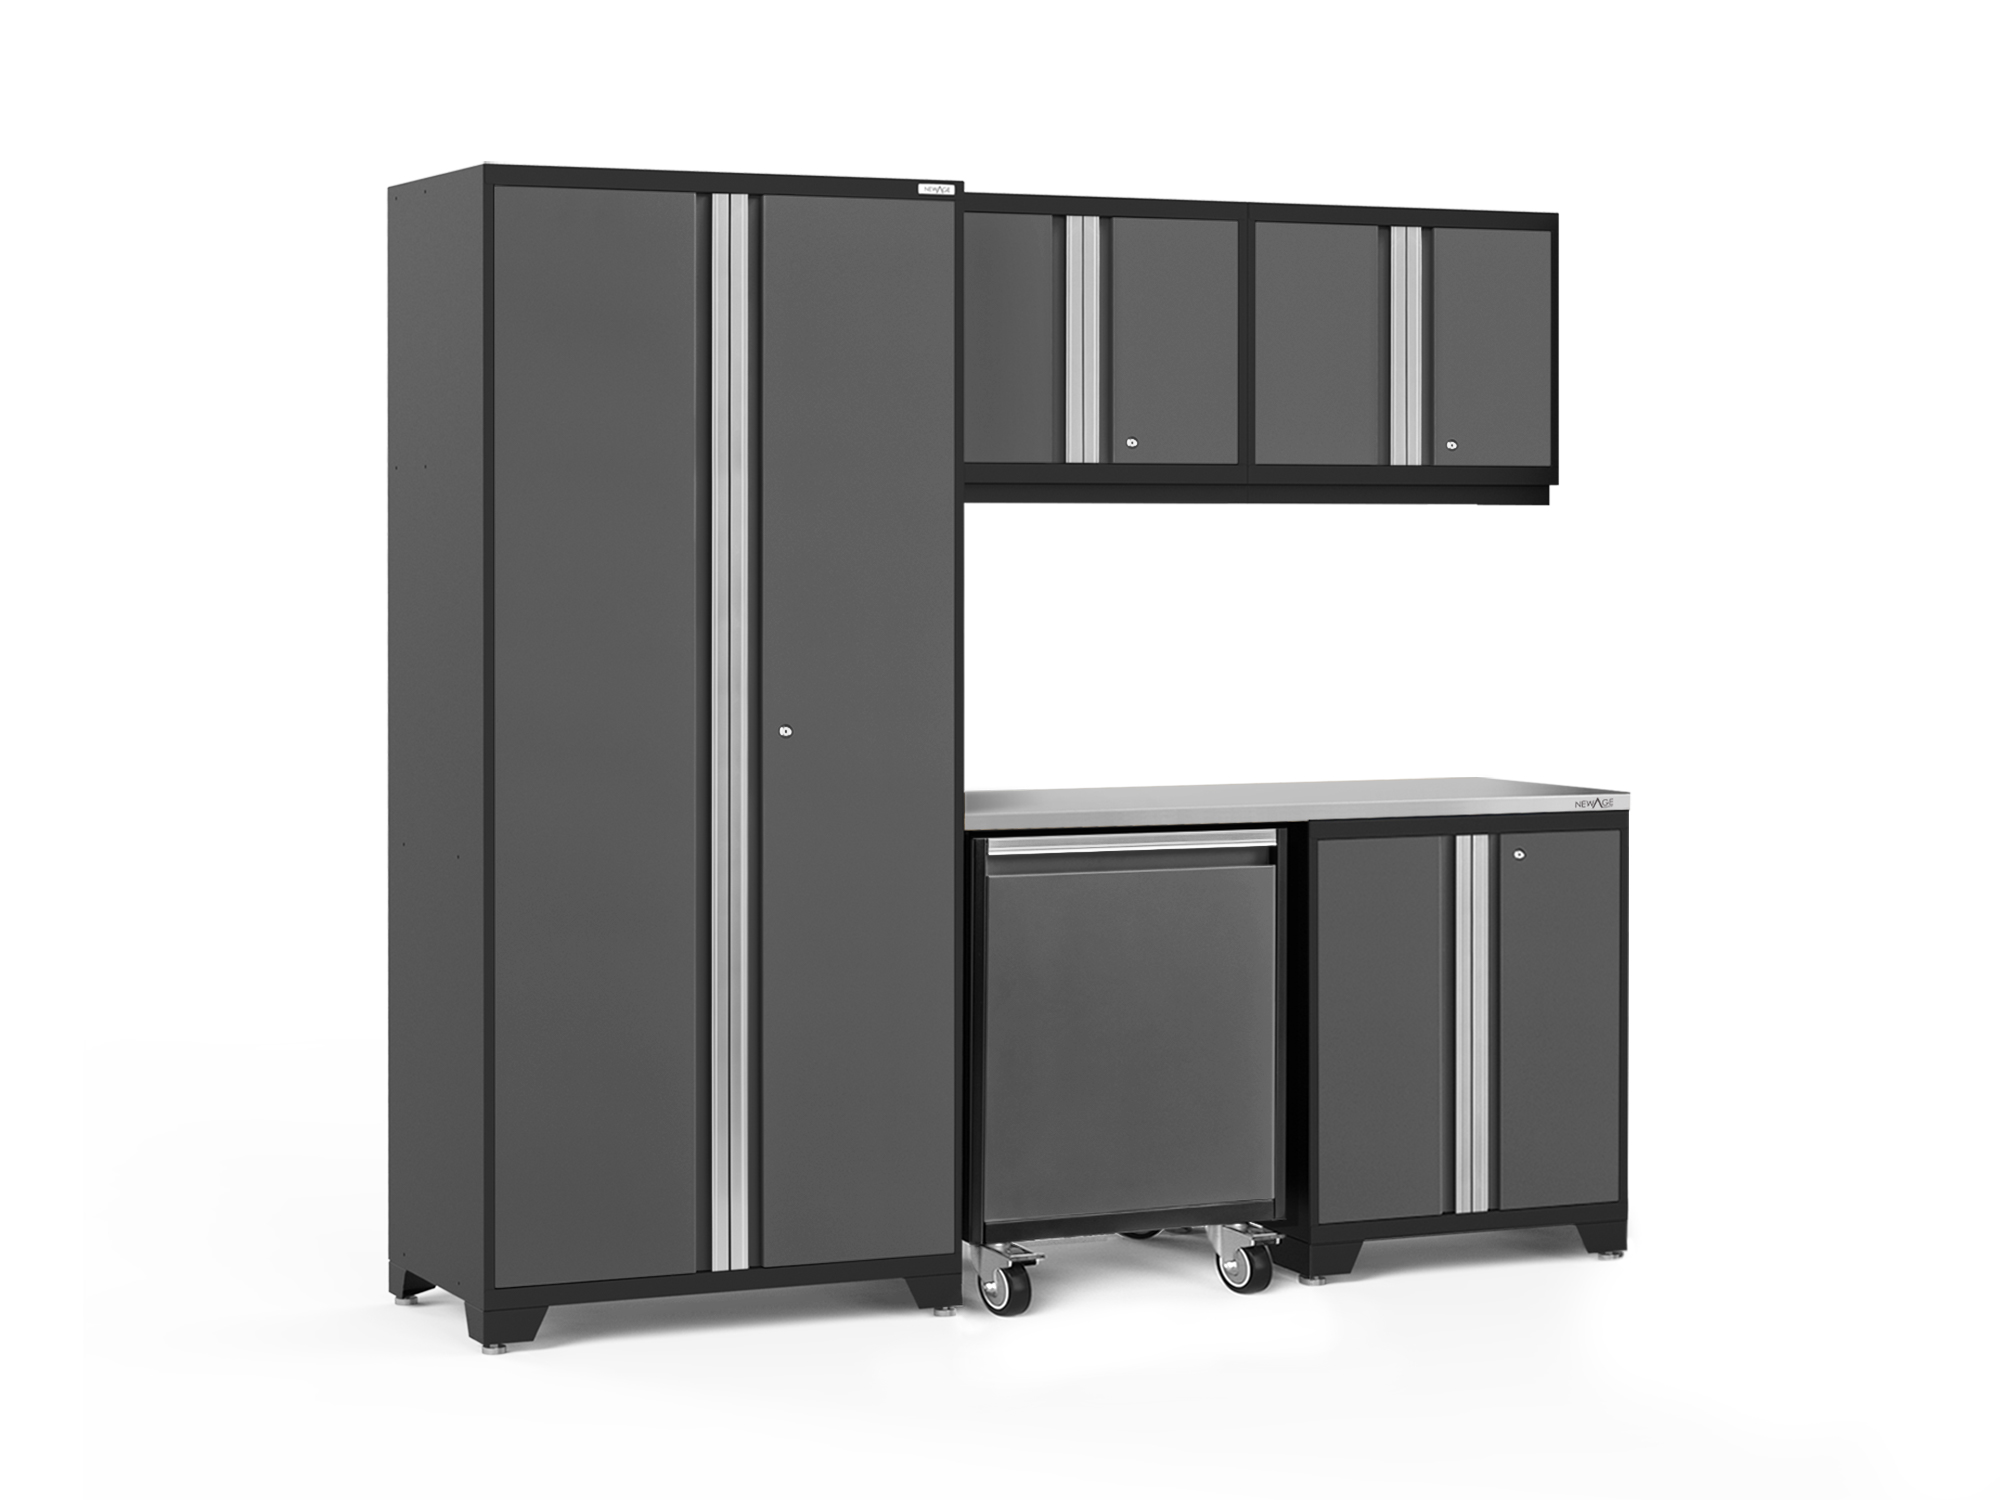 Pro 6 Pc Cabinet Set: Wall, Utility Cabinet, 36 in. Locker